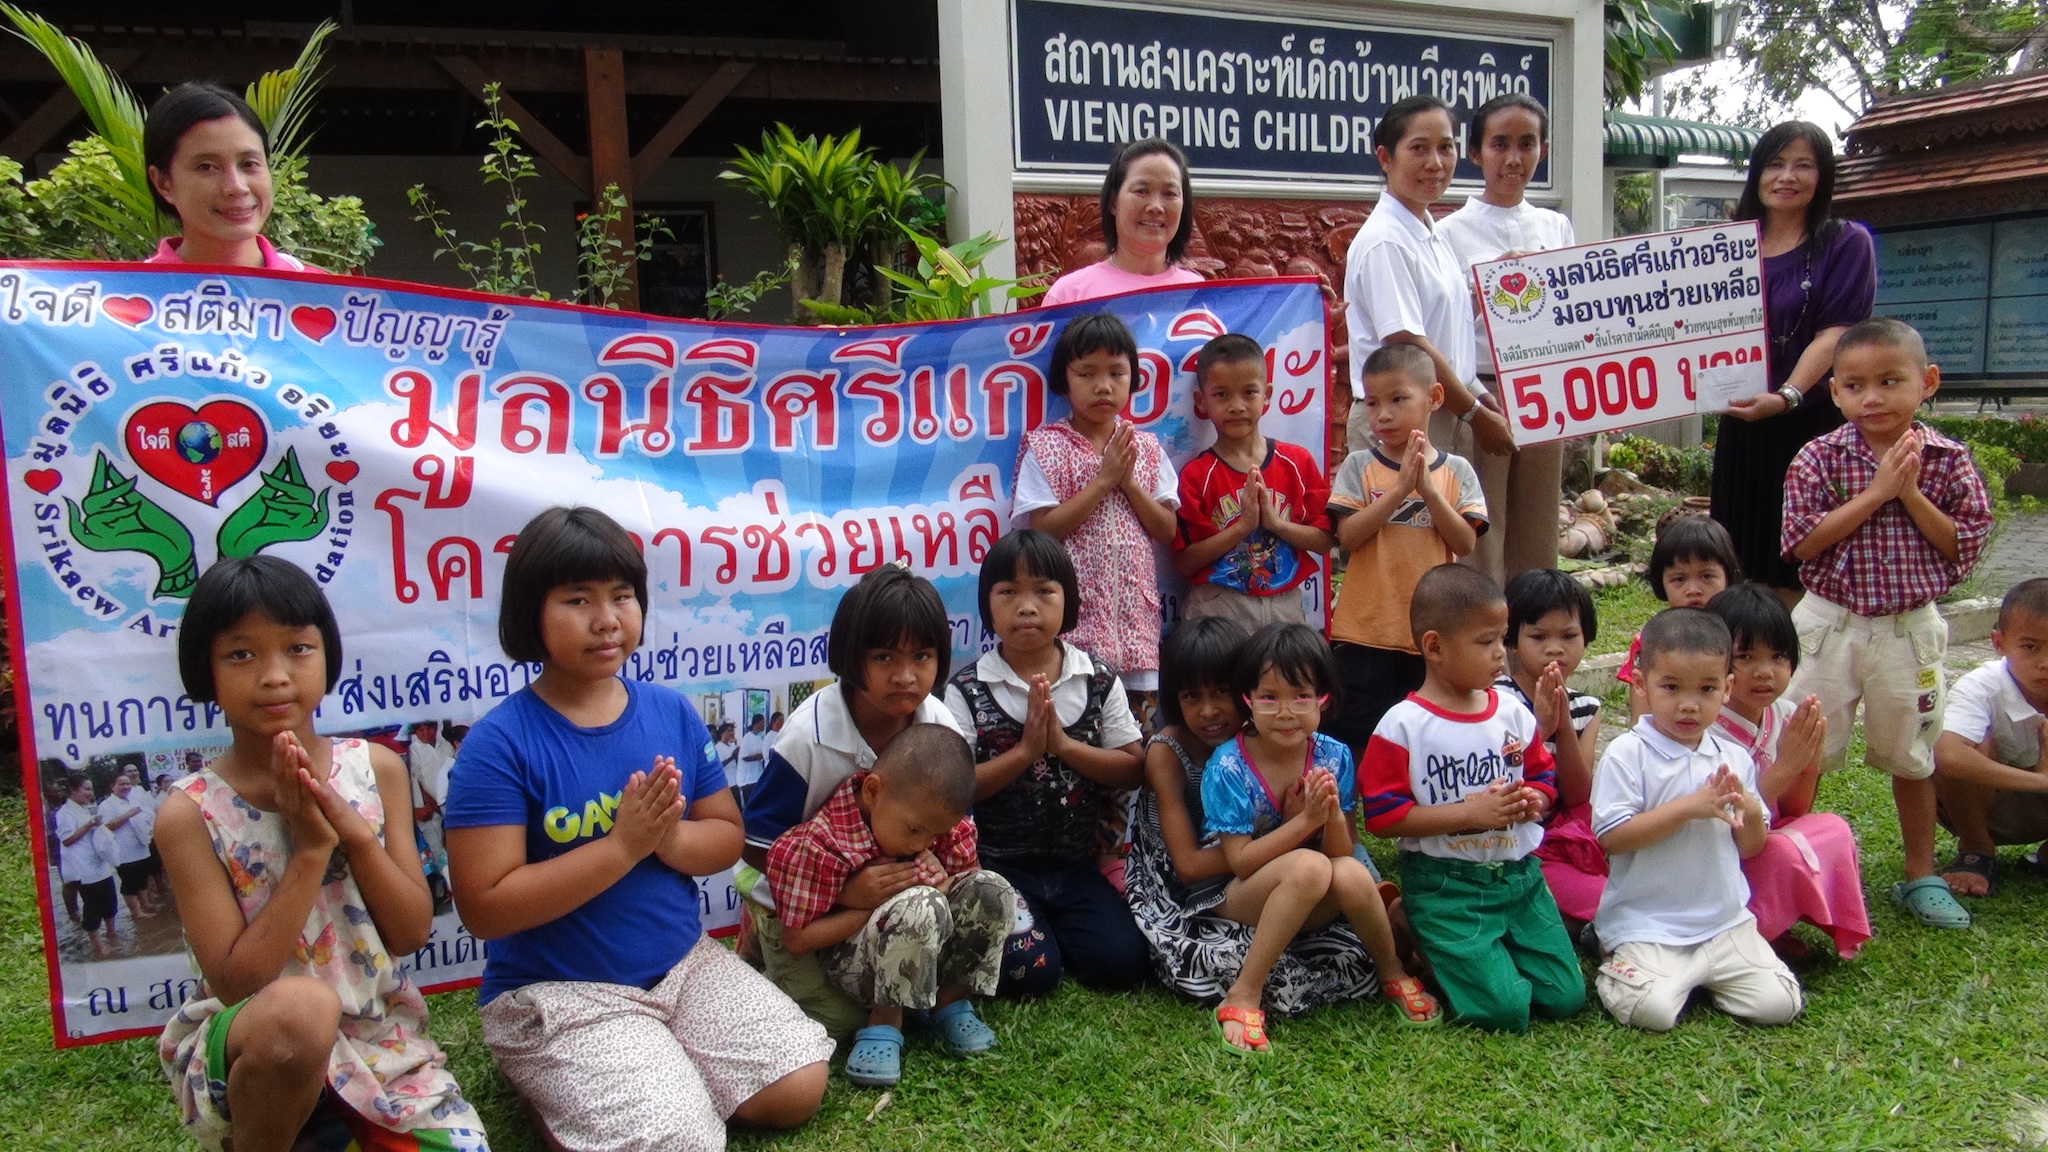 โครงการมอบทุนช่วยเหลือเด็กกำพร้า วันที่ 29 เมษายน 2557   ณ สถานสงเคราะห์เด็กบ้านเวียงพิงค์ อ.แม่ริม จ.เชียงใหม่